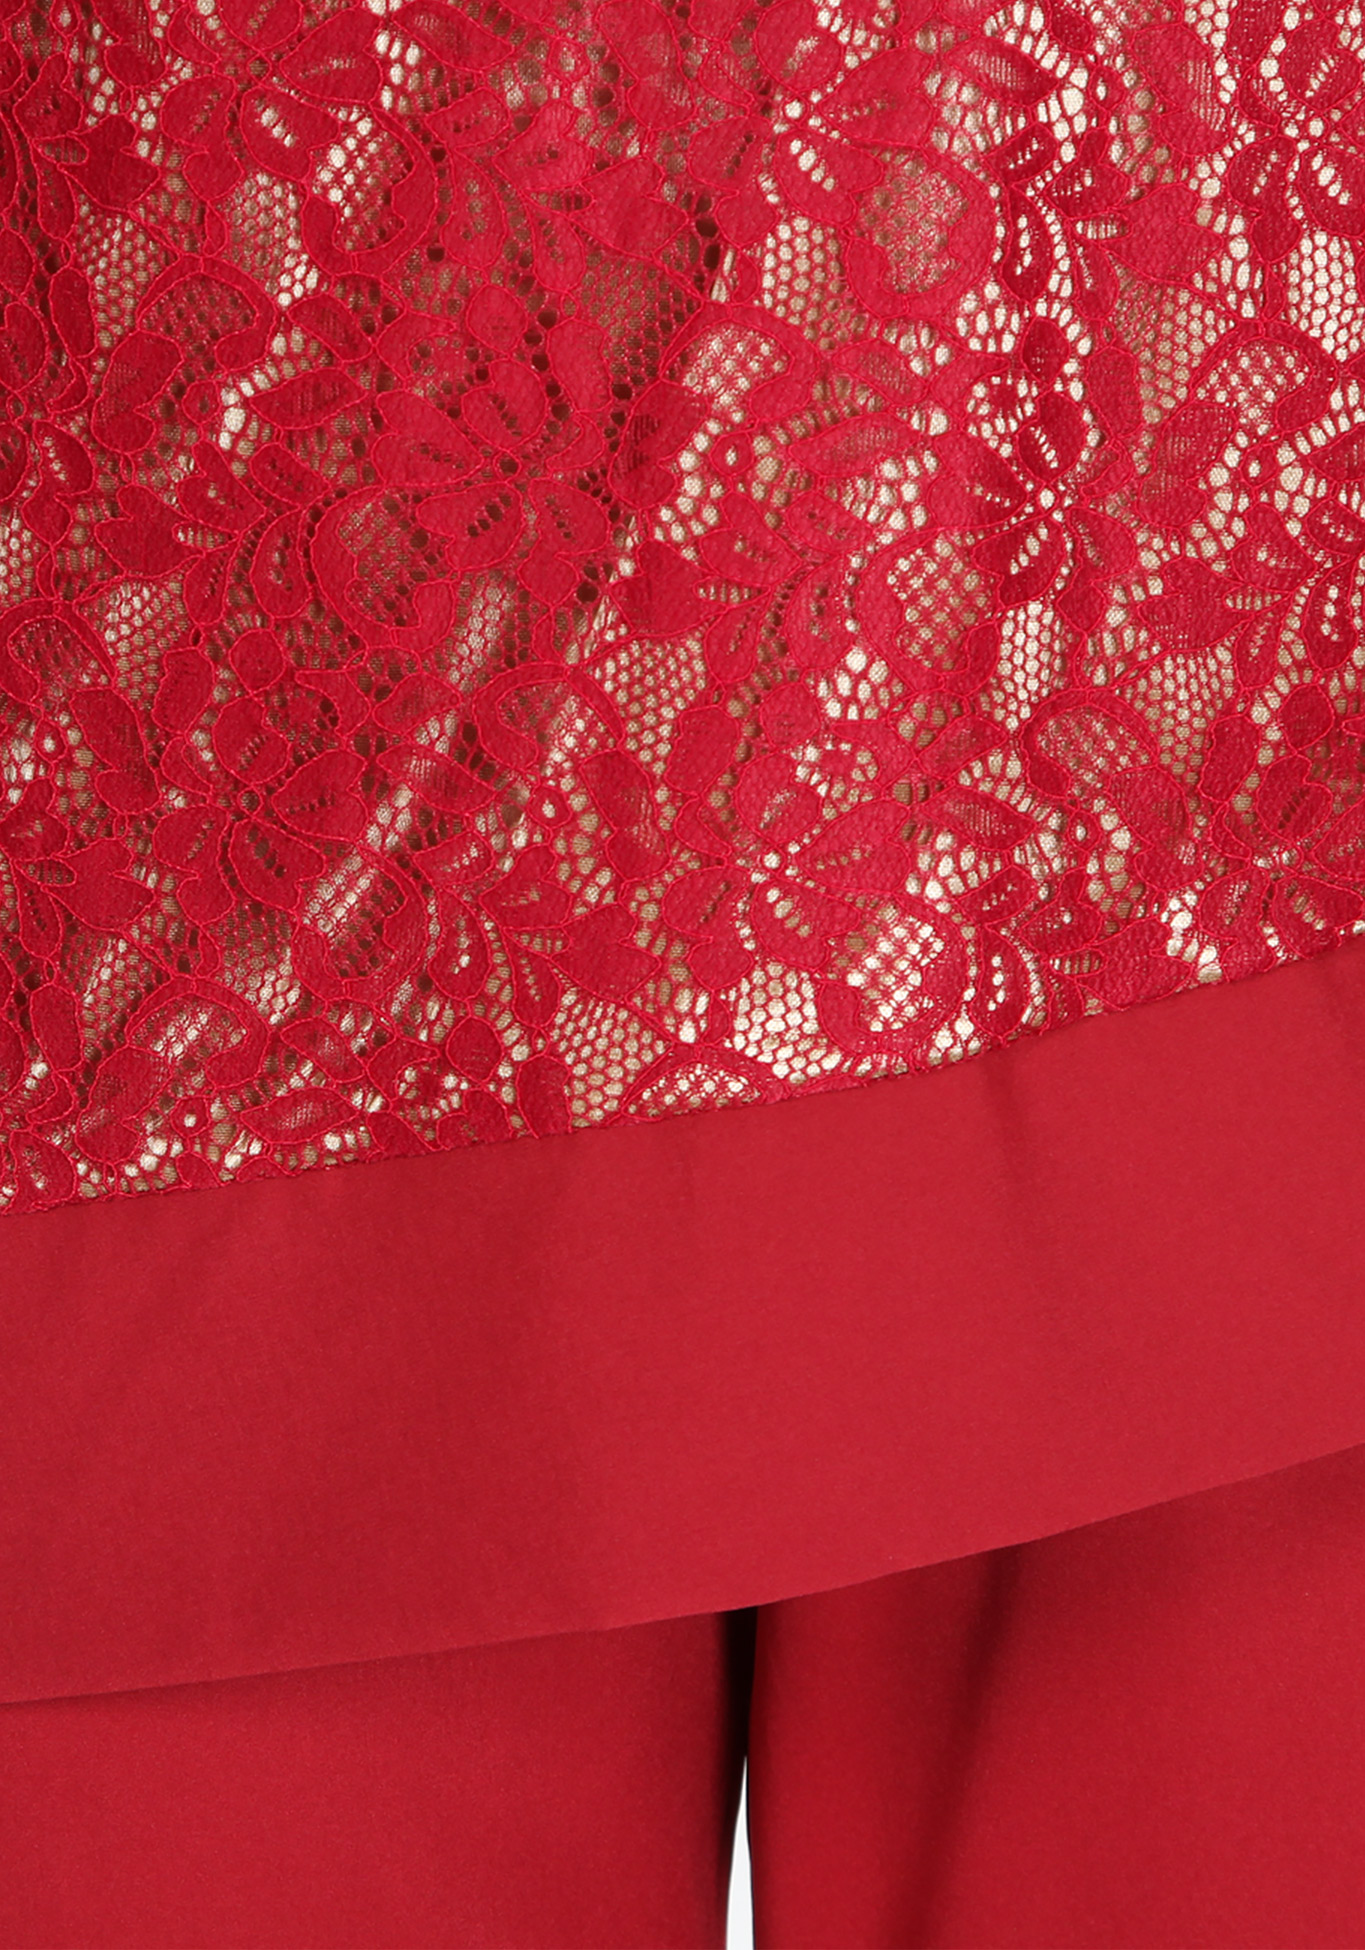 Костюм женский «Ариана» Kumar collection, размер 54, цвет красный фантазийная - фото 4